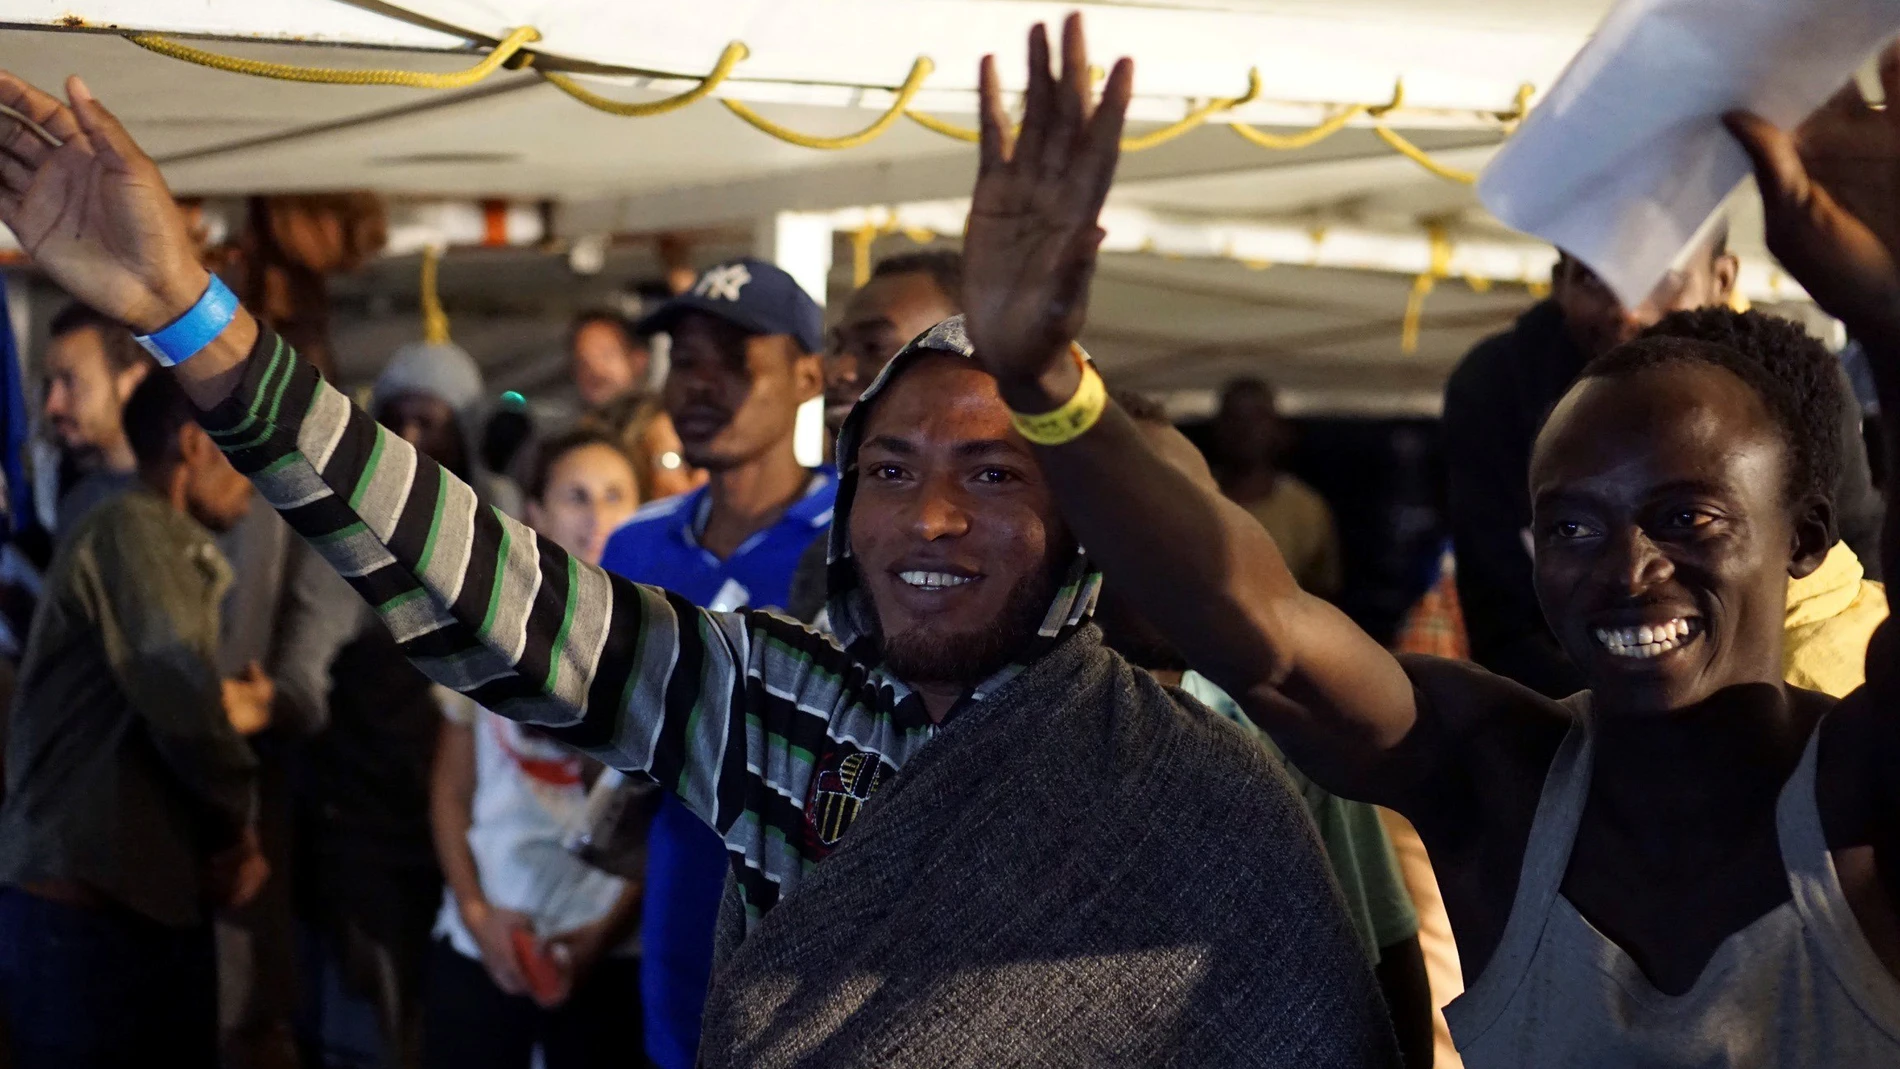 Algunos de los migrantes a bordo del Open Arms momentos antes de desembarcar en Lampedusa